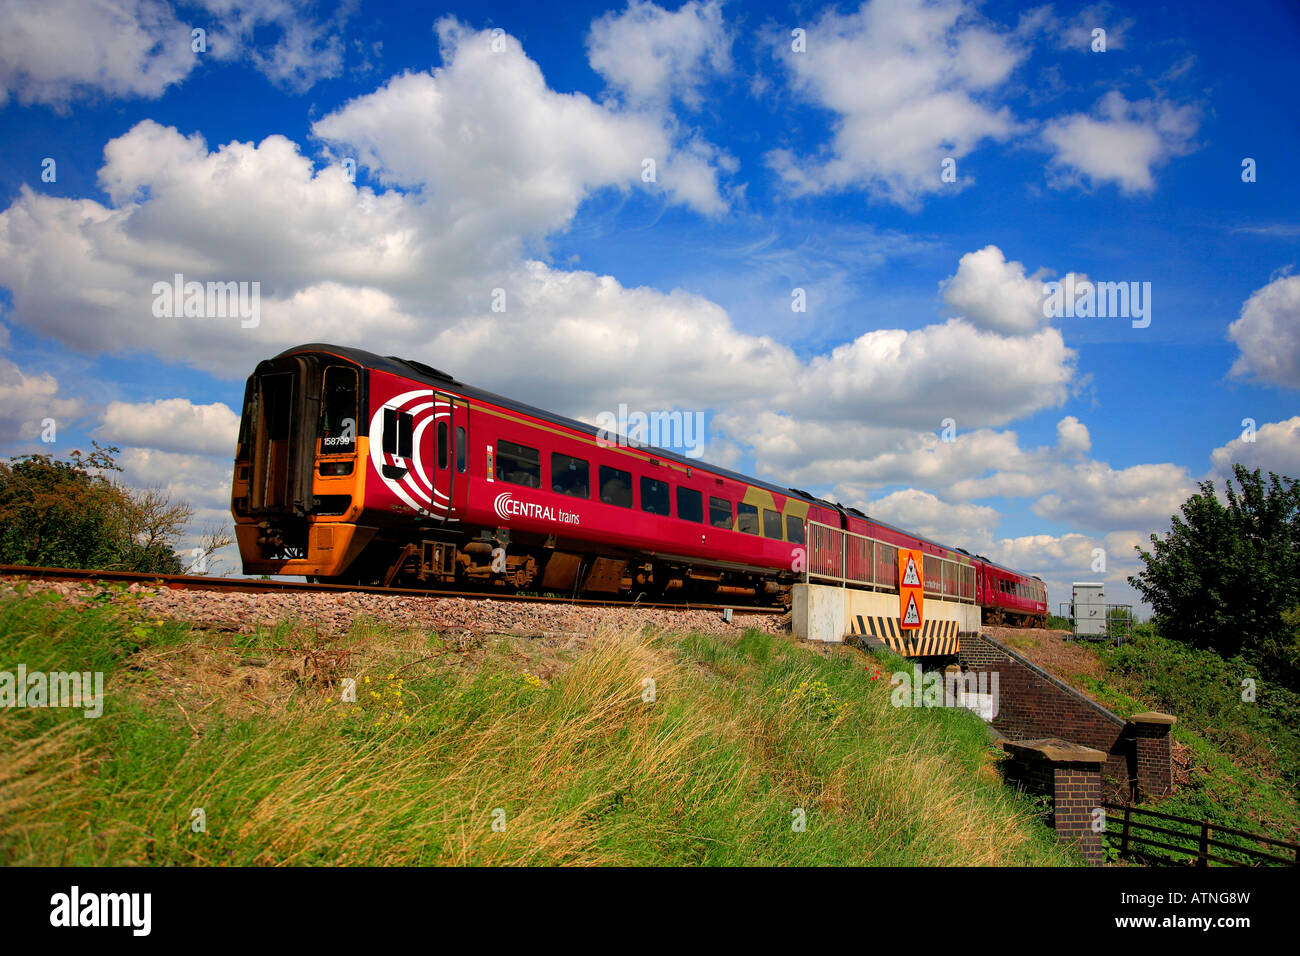 Treni centrale 158799 treno diesel voce unità nella stazione di Ely Cambridgeshire England Regno Unito Foto Stock